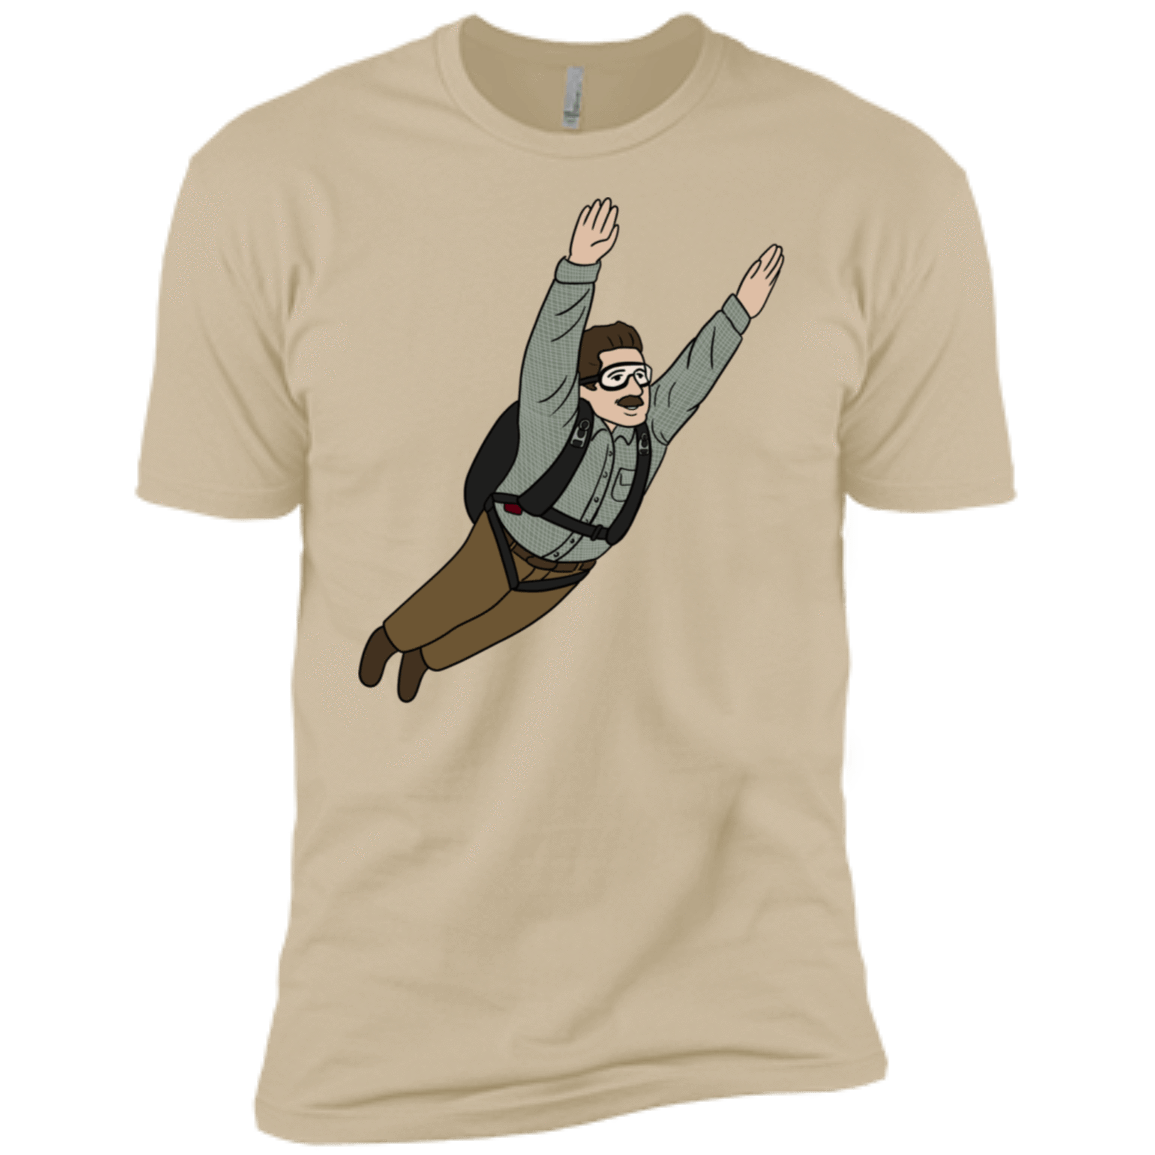 T-Shirts Sand / X-Small Peter is my Hero Men's Premium T-Shirt